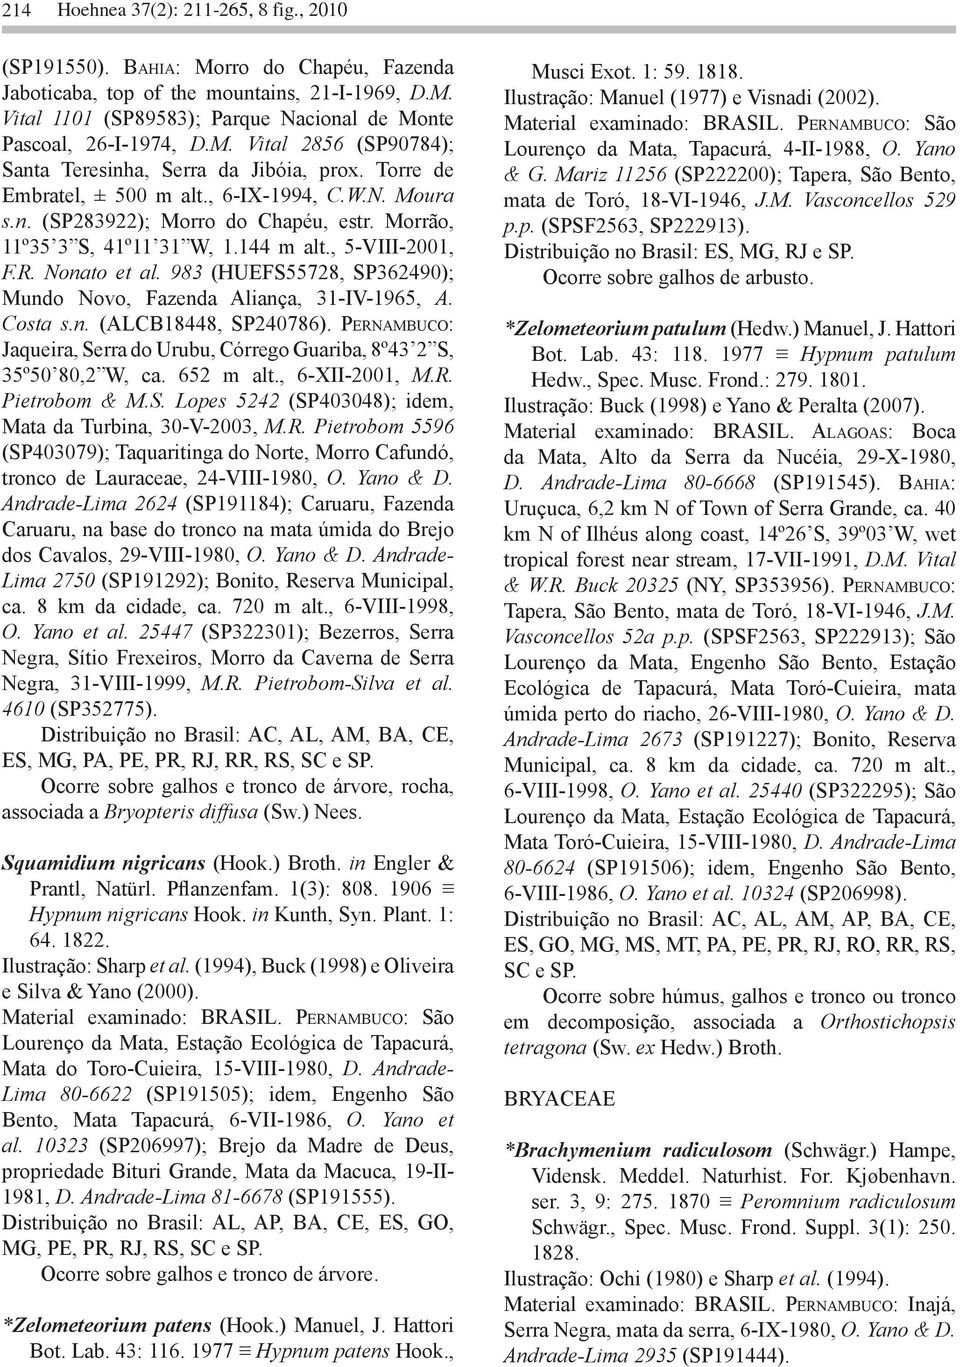 144 m alt., 5-VIII-2001, F.R. Nonato et al. 983 (HUEFS55728, SP362490); Mundo Novo, Fazenda Aliança, 31-IV-1965, A. Costa s.n. (ALCB18448, SP240786).